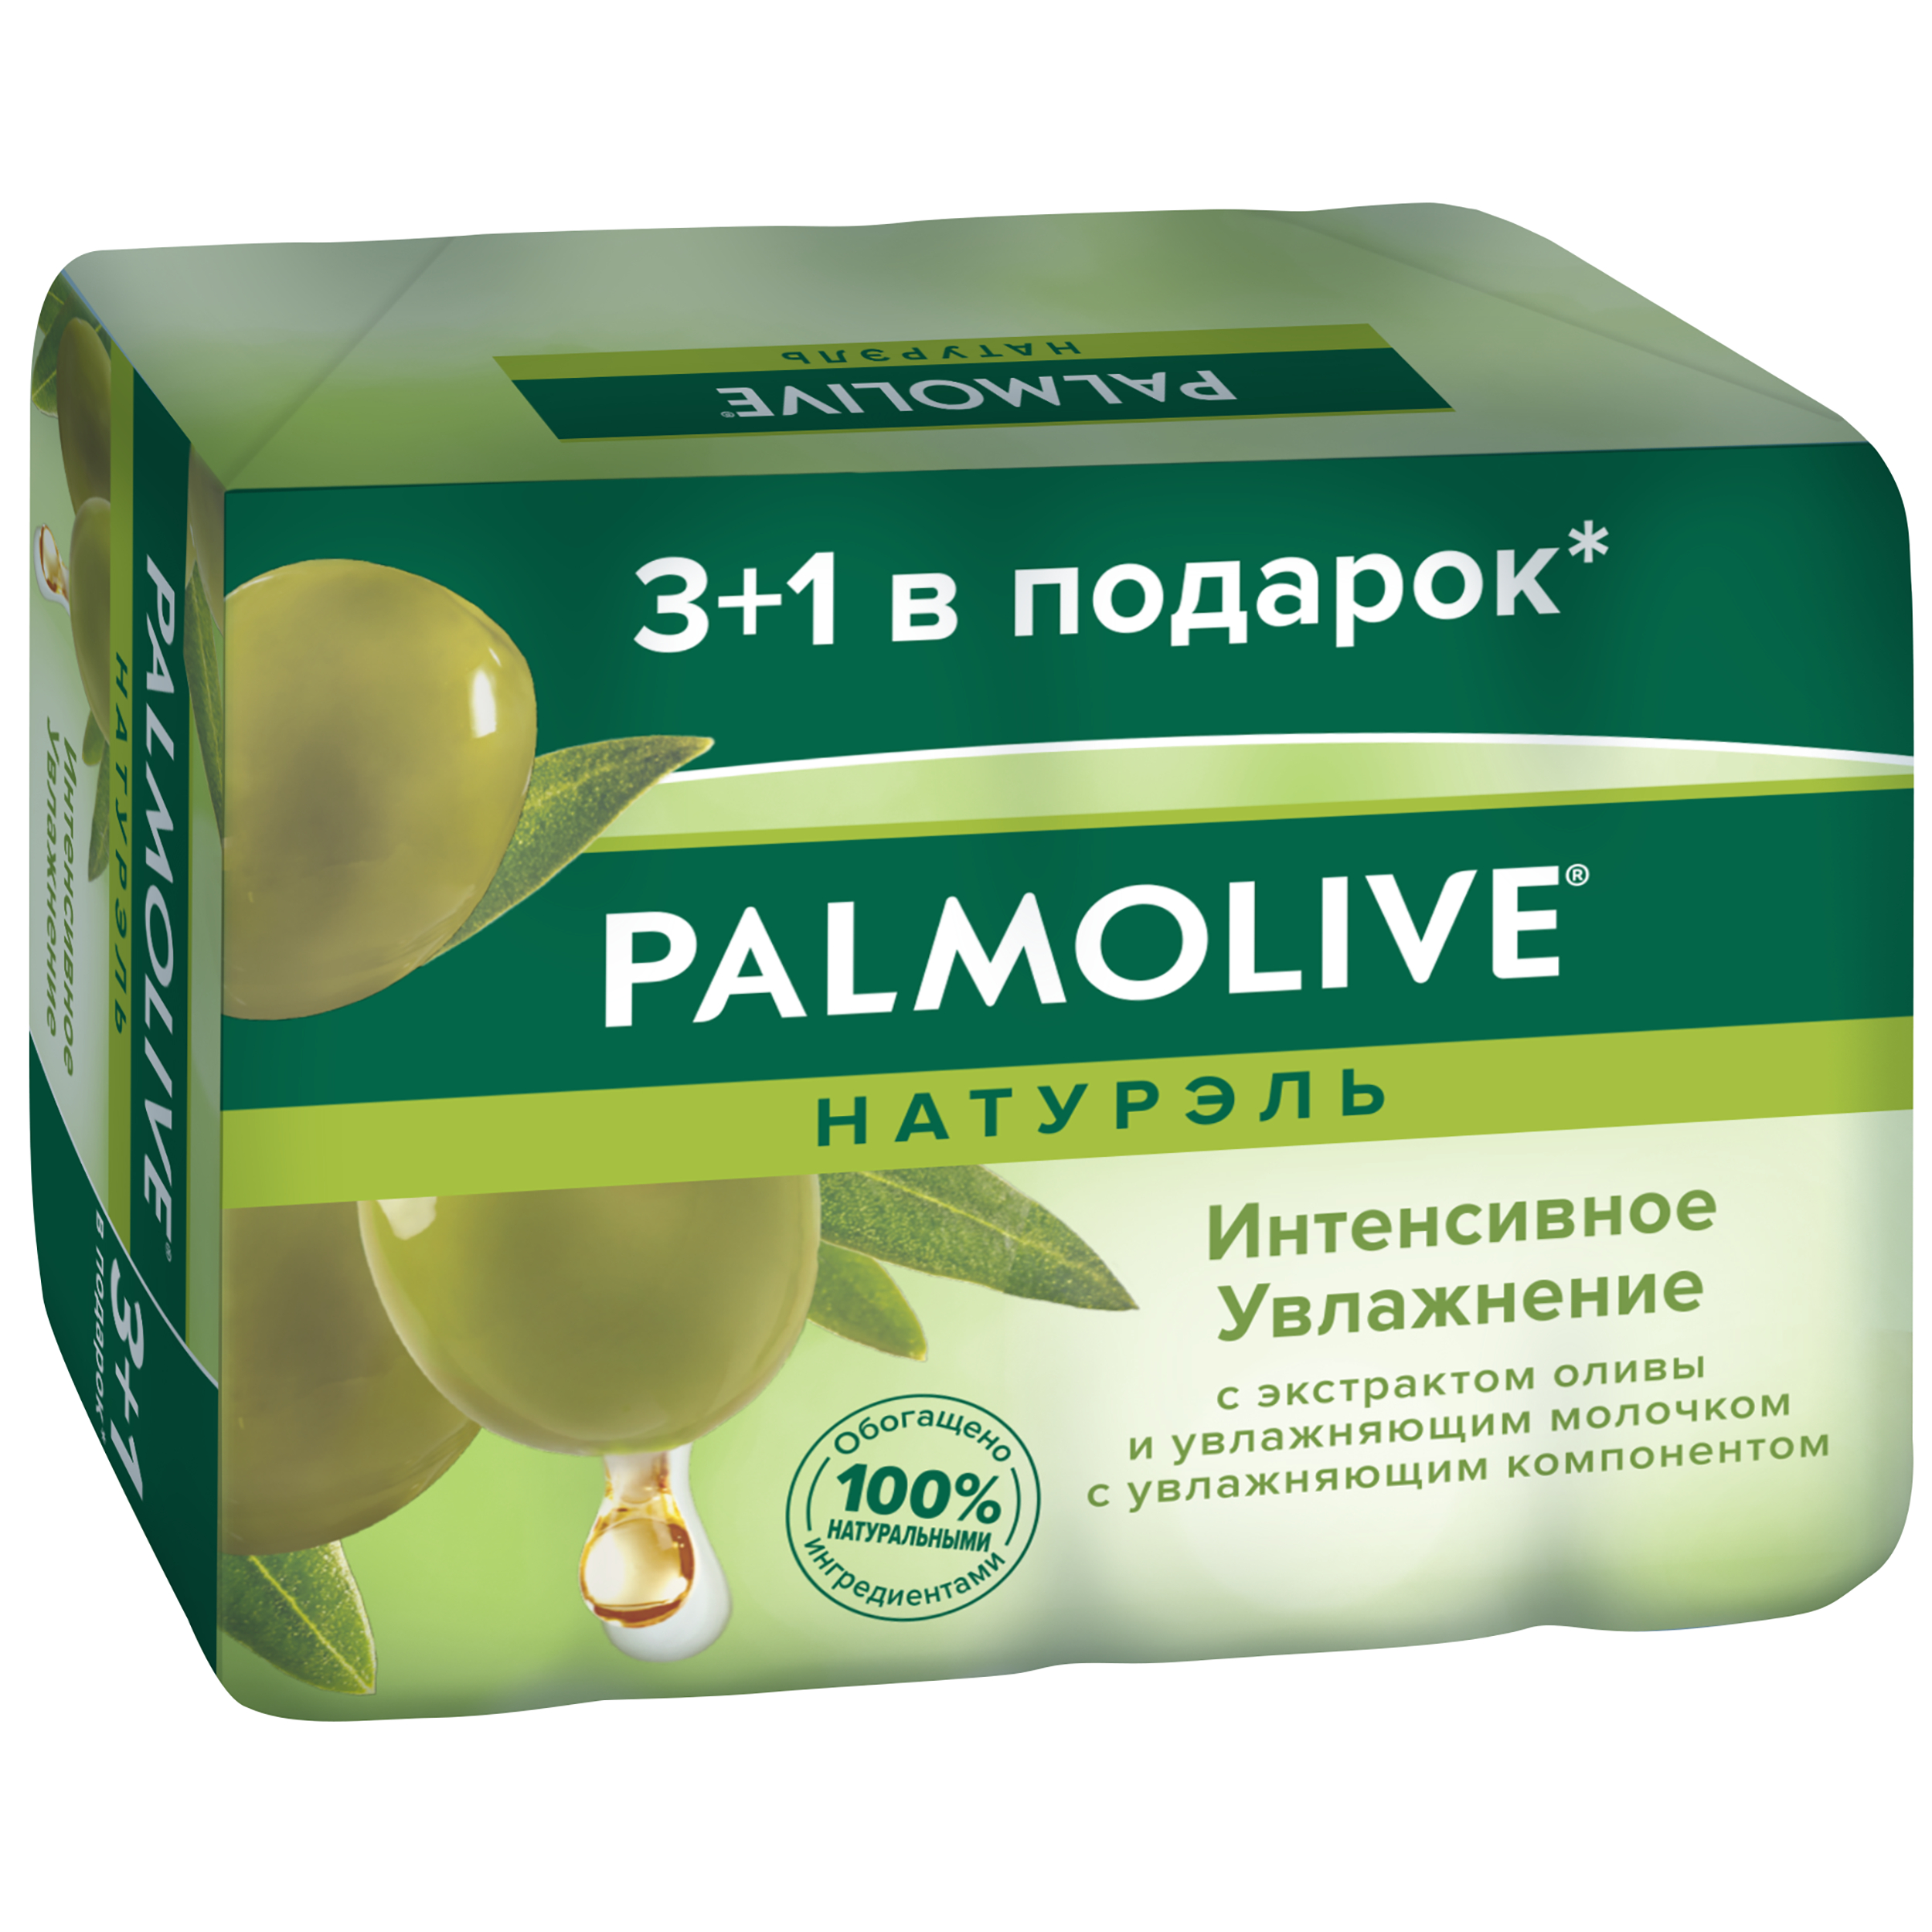 Косметическое мыло Palmolive Натурэль Интенсивное увлажнение с экстрактом оливы 4x90 г косметическое мыло palmolive с экстрактом оливы и увлажняющим молочком 90г